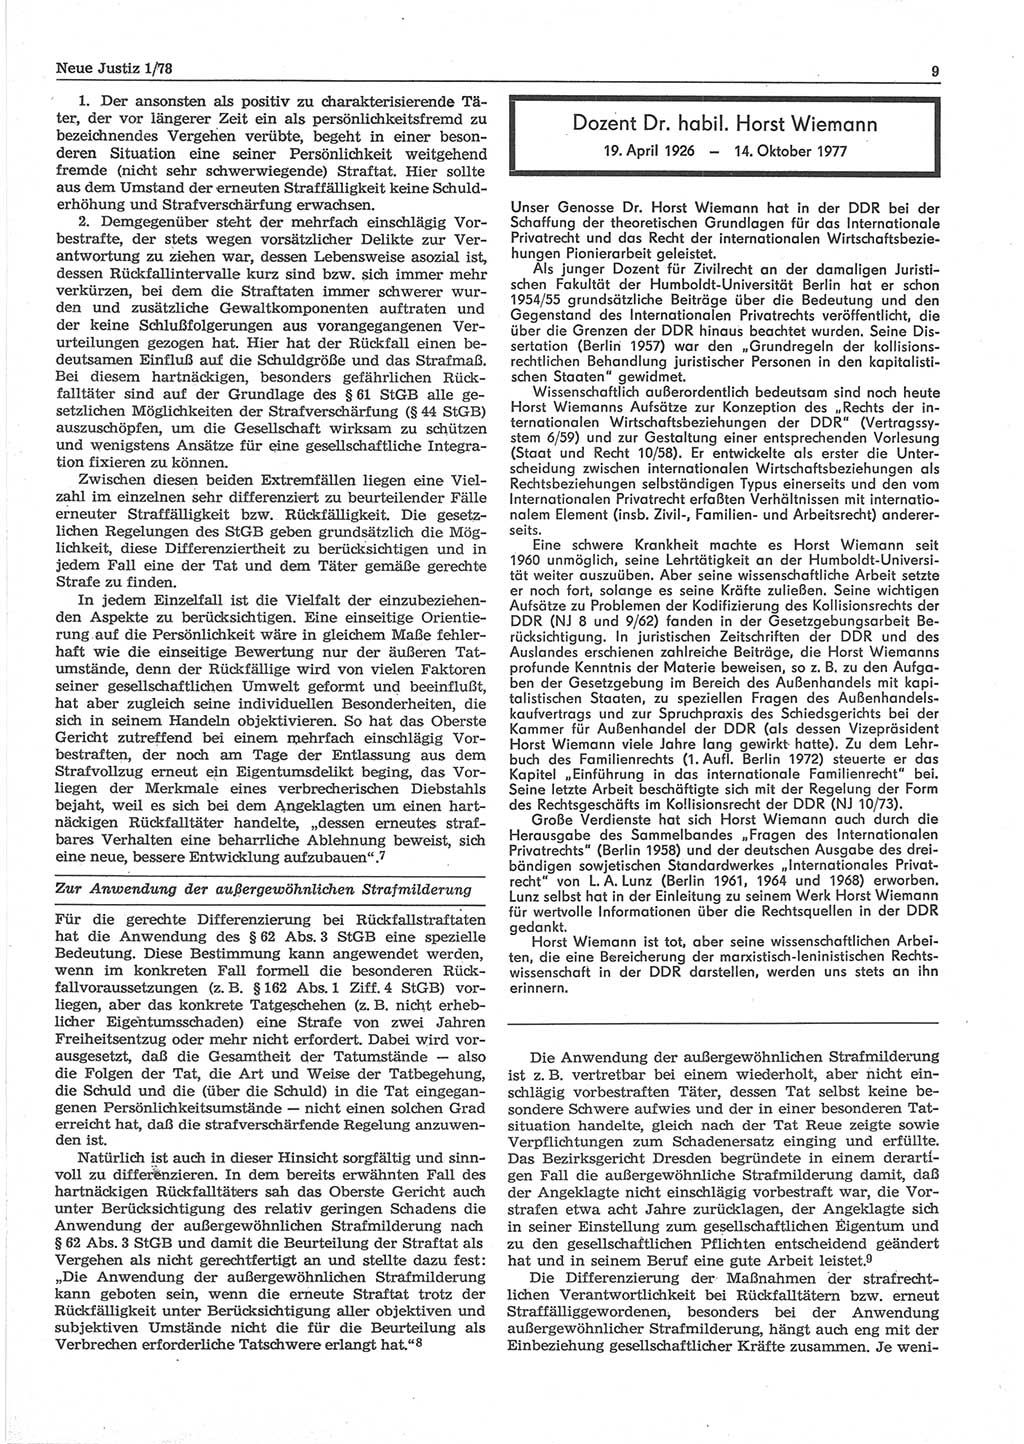 Neue Justiz (NJ), Zeitschrift für sozialistisches Recht und Gesetzlichkeit [Deutsche Demokratische Republik (DDR)], 32. Jahrgang 1978, Seite 9 (NJ DDR 1978, S. 9)